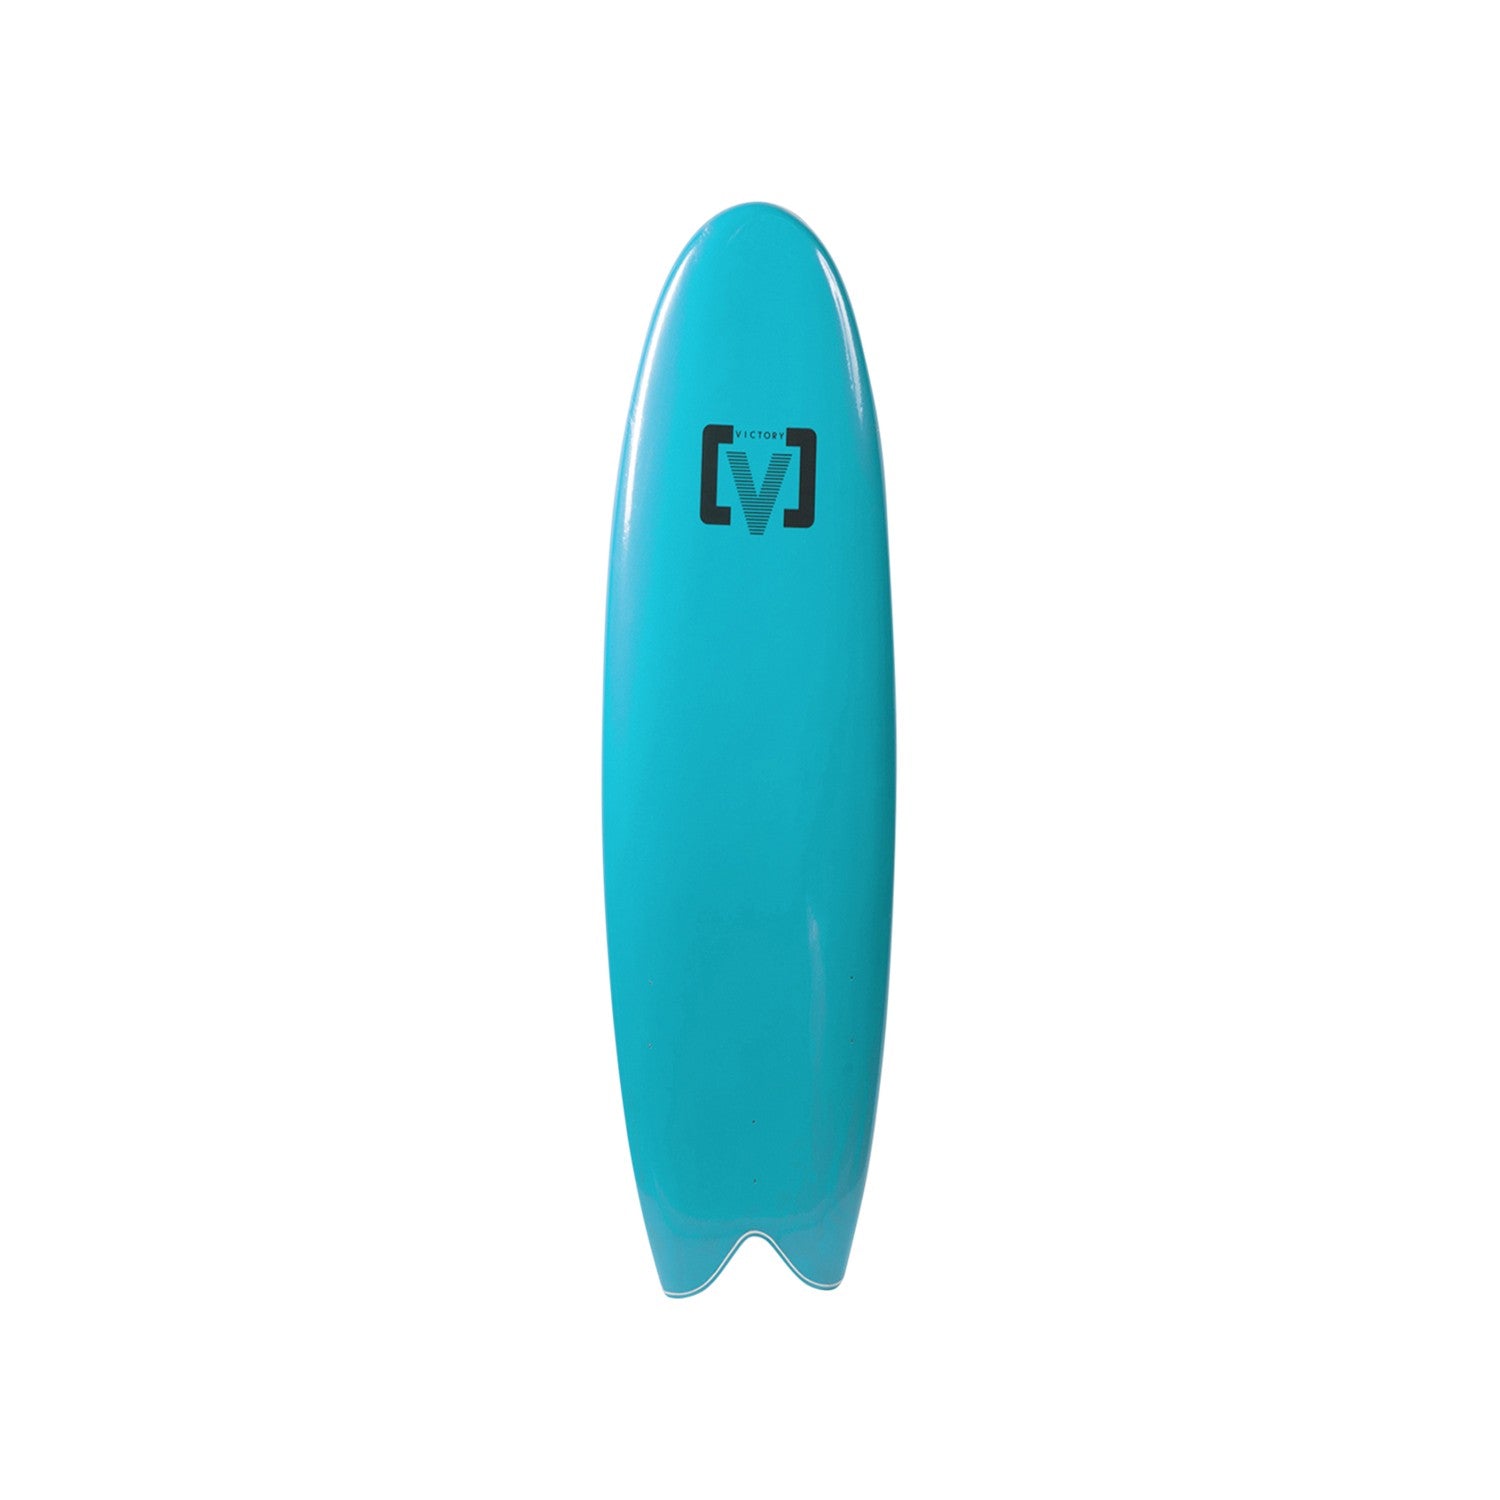 VICTORY - EPS Softboard - Foam Surfboard - Fish 6'6 - Light Blue